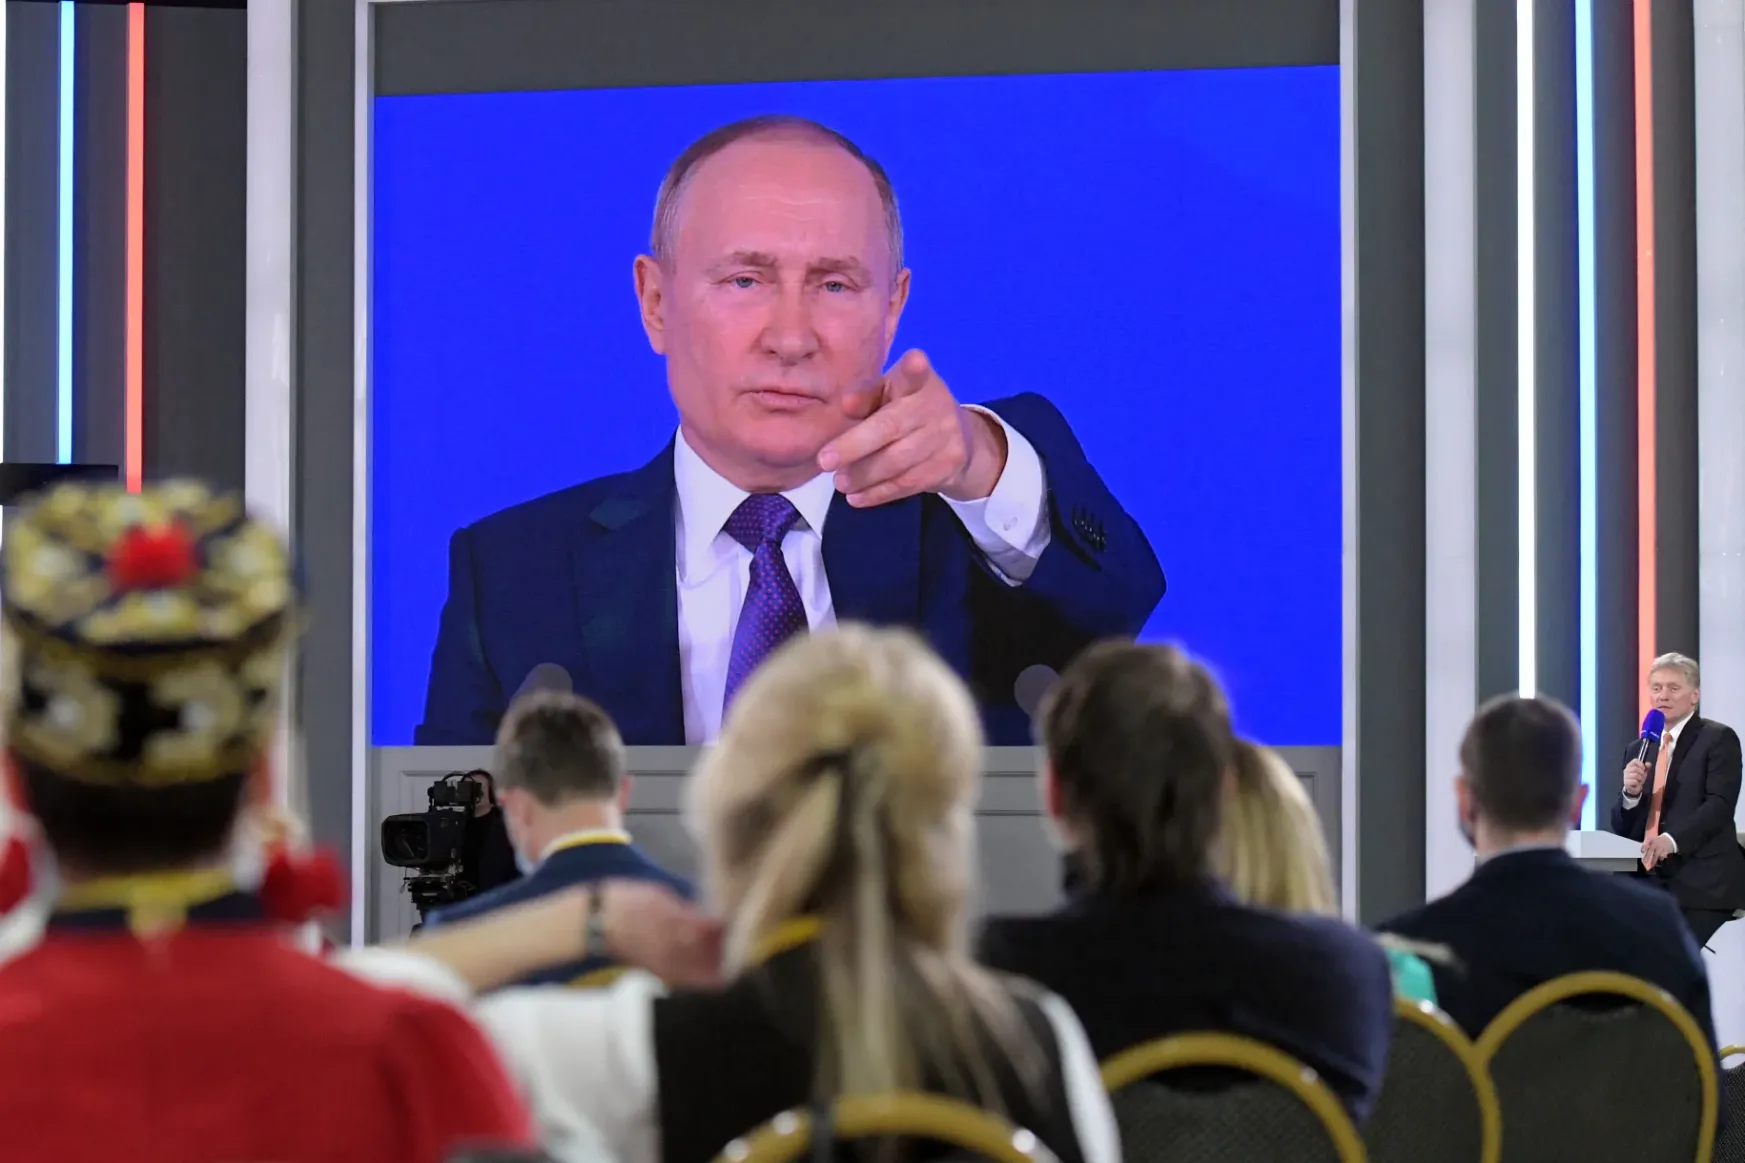 Fact-check: Putyin nem ígért olyat, hogy be fogja mutatni az USA és EU népirtó terveit